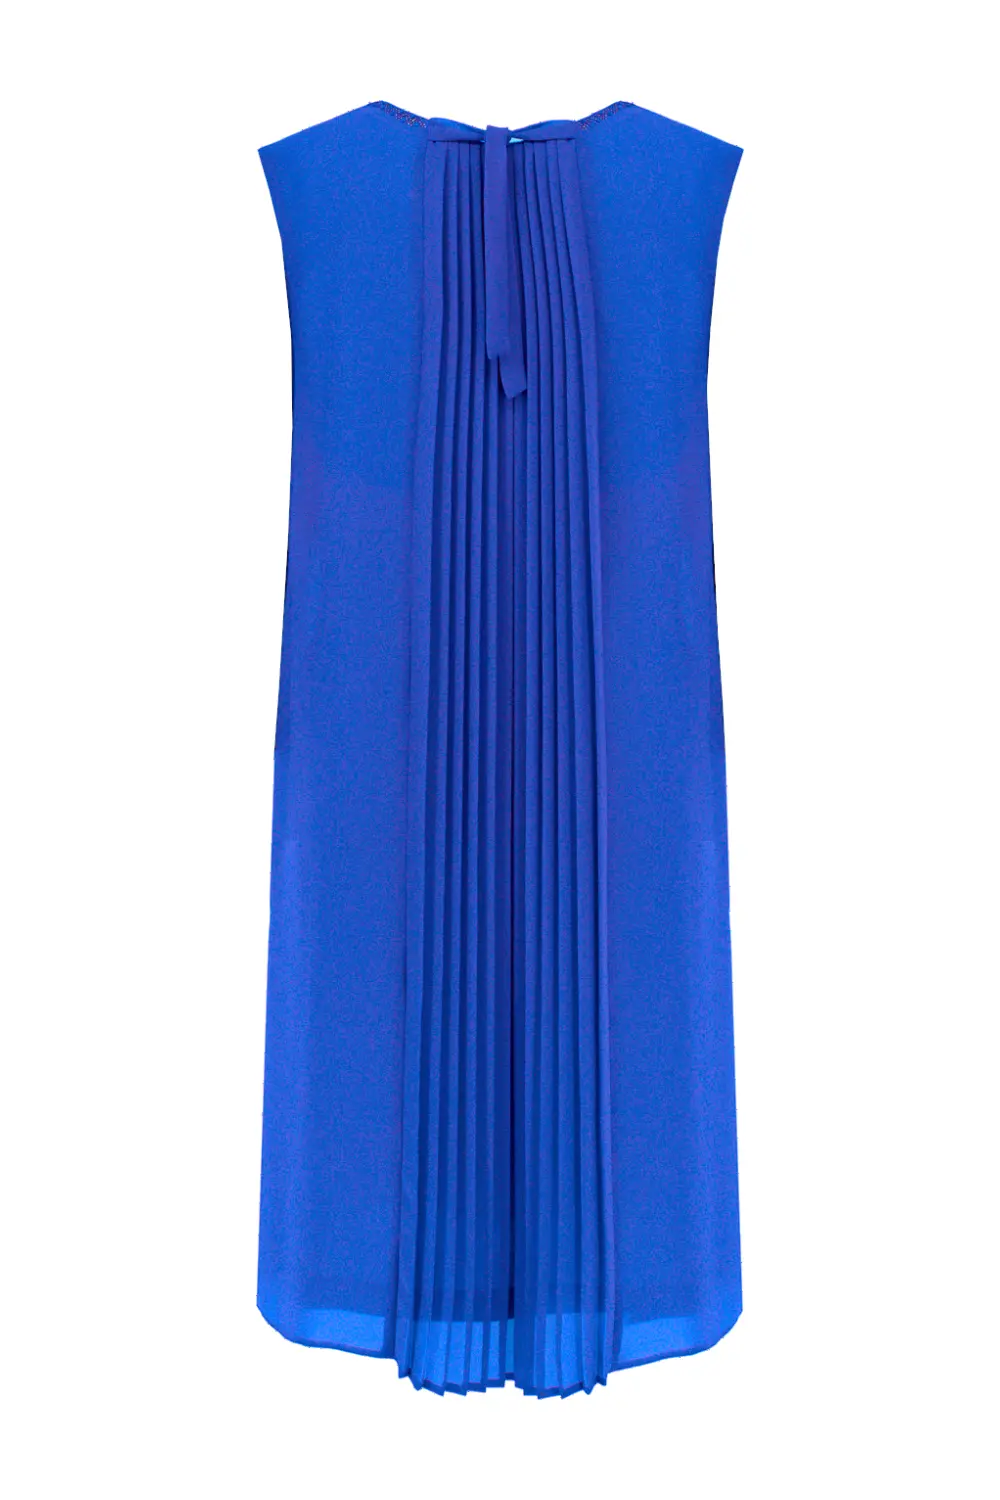 wizytowa sukienka z szyfonu kobaltowa z plisowaniem z tyłu bez rękawów polska marka Vito Vergelis